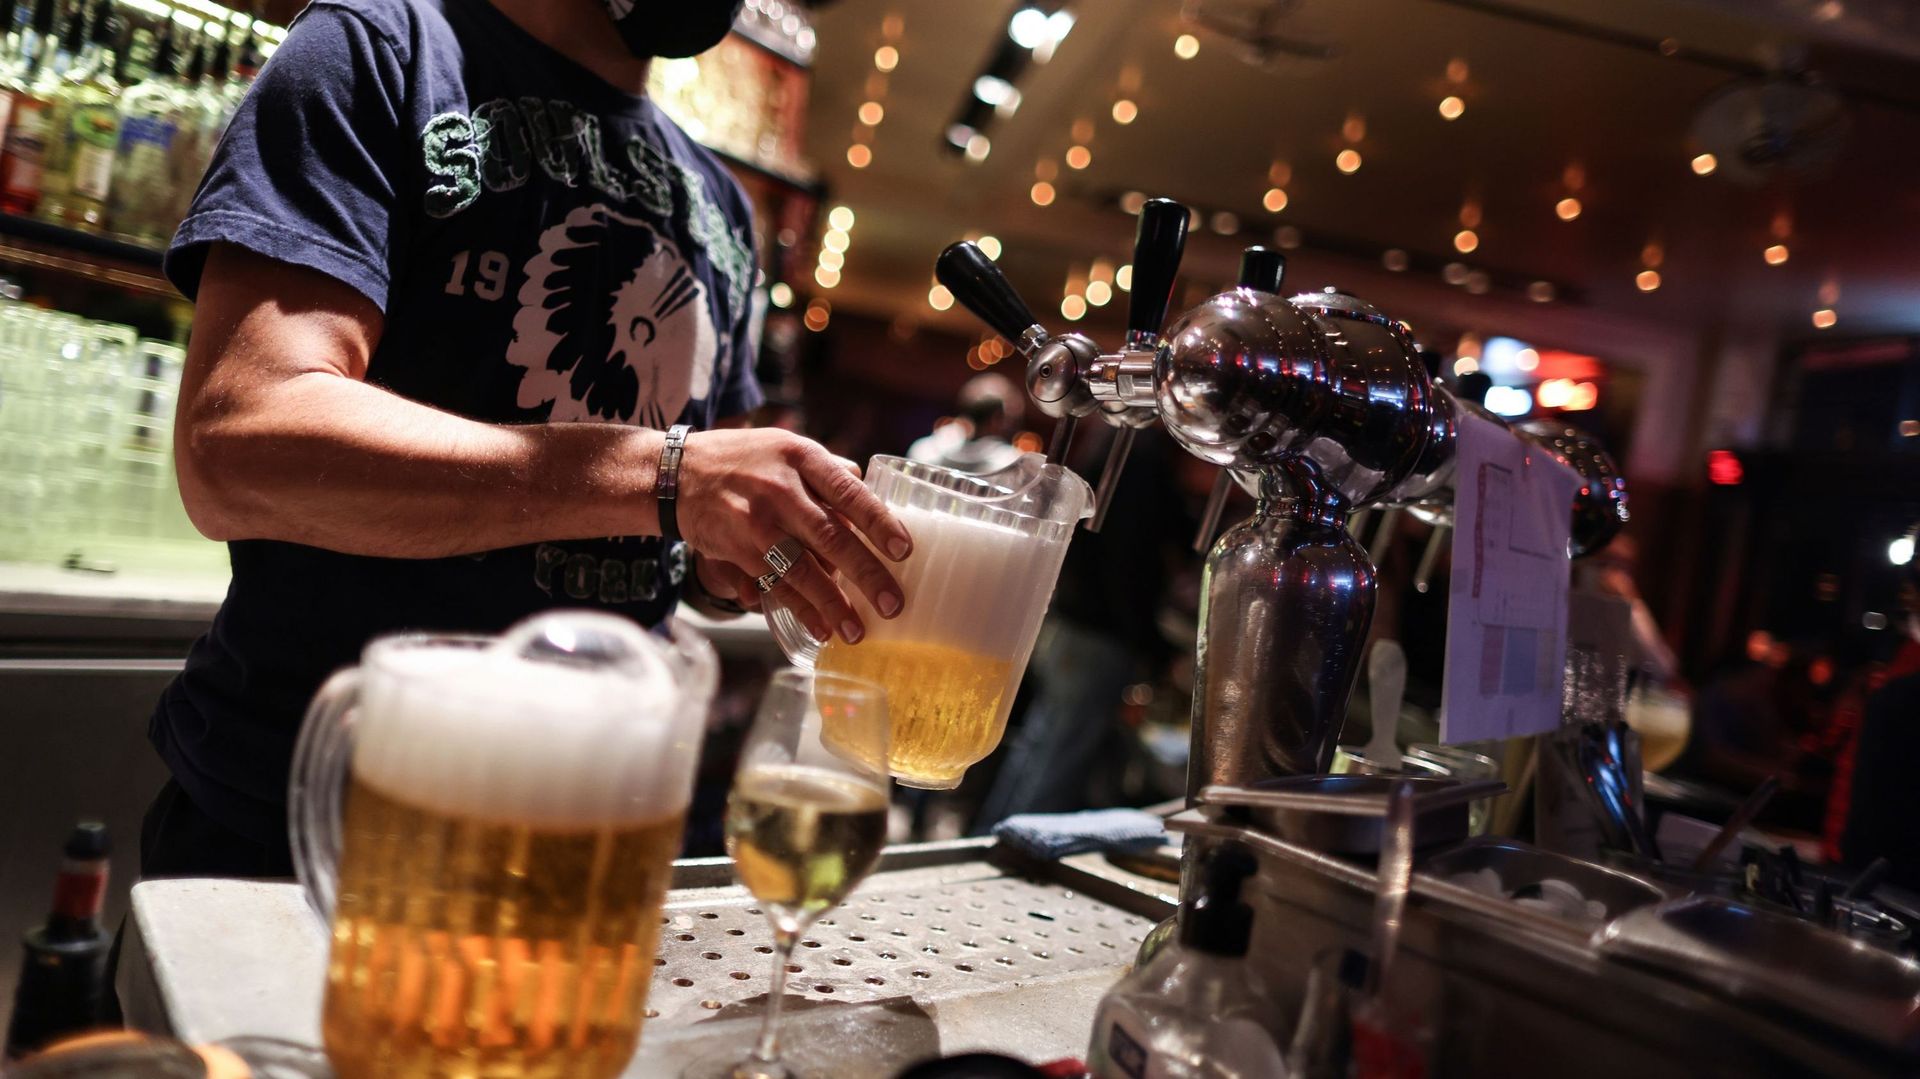 On compte officiellement plus de 1600 cafés et bars dans les 19 communes bruxelloises.